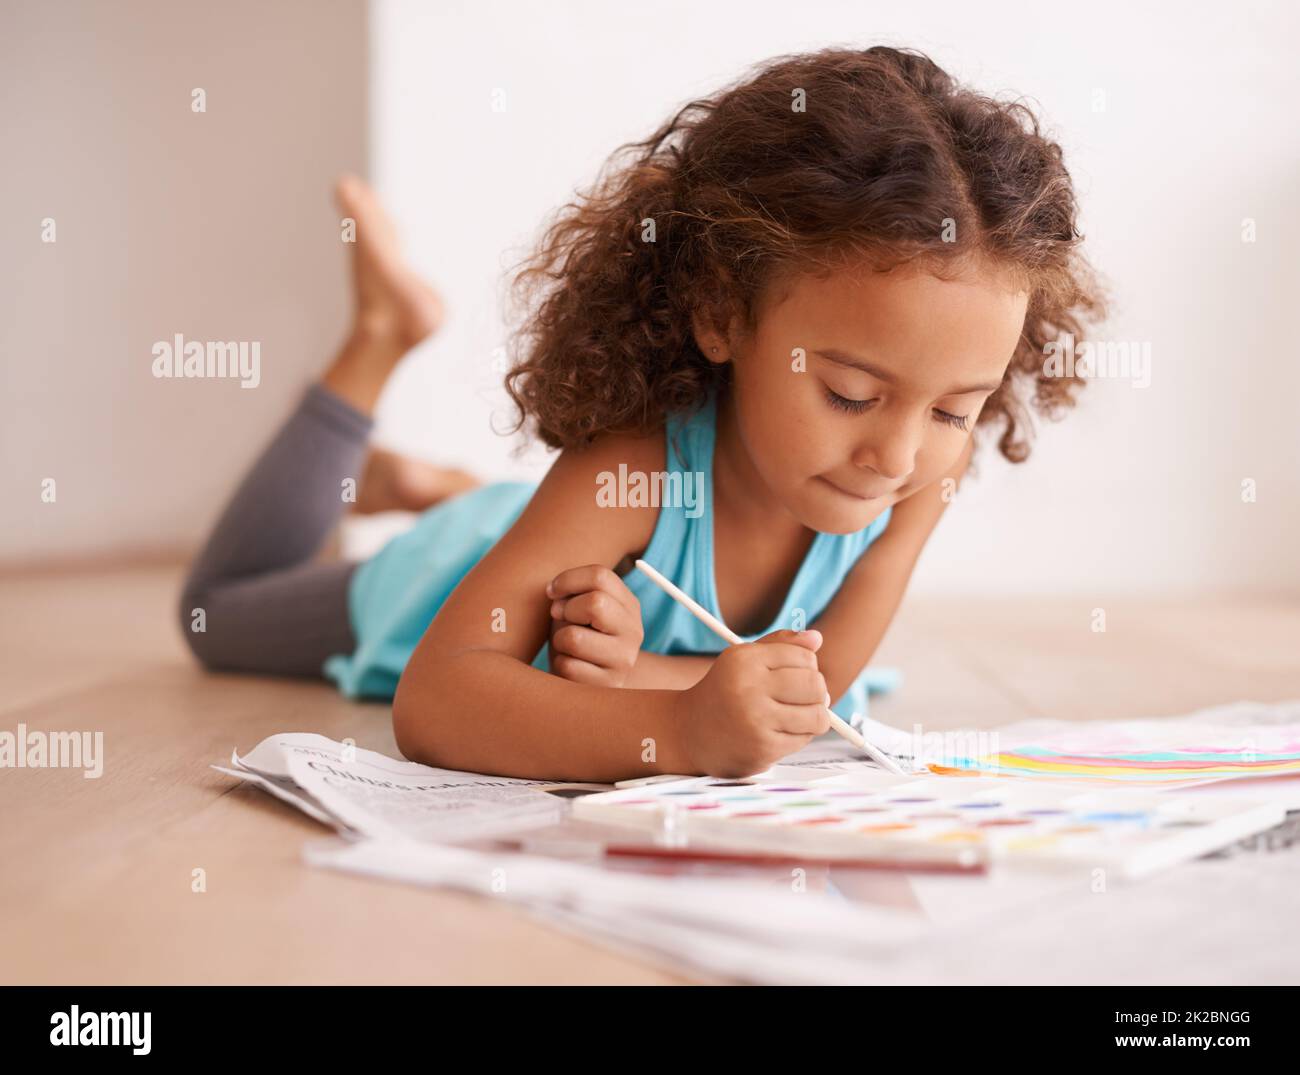 Ein Künstler im Bilden. Aufnahme eines kleinen Mädchens, das auf dem Boden liegt und ein Bild malt. Stockfoto